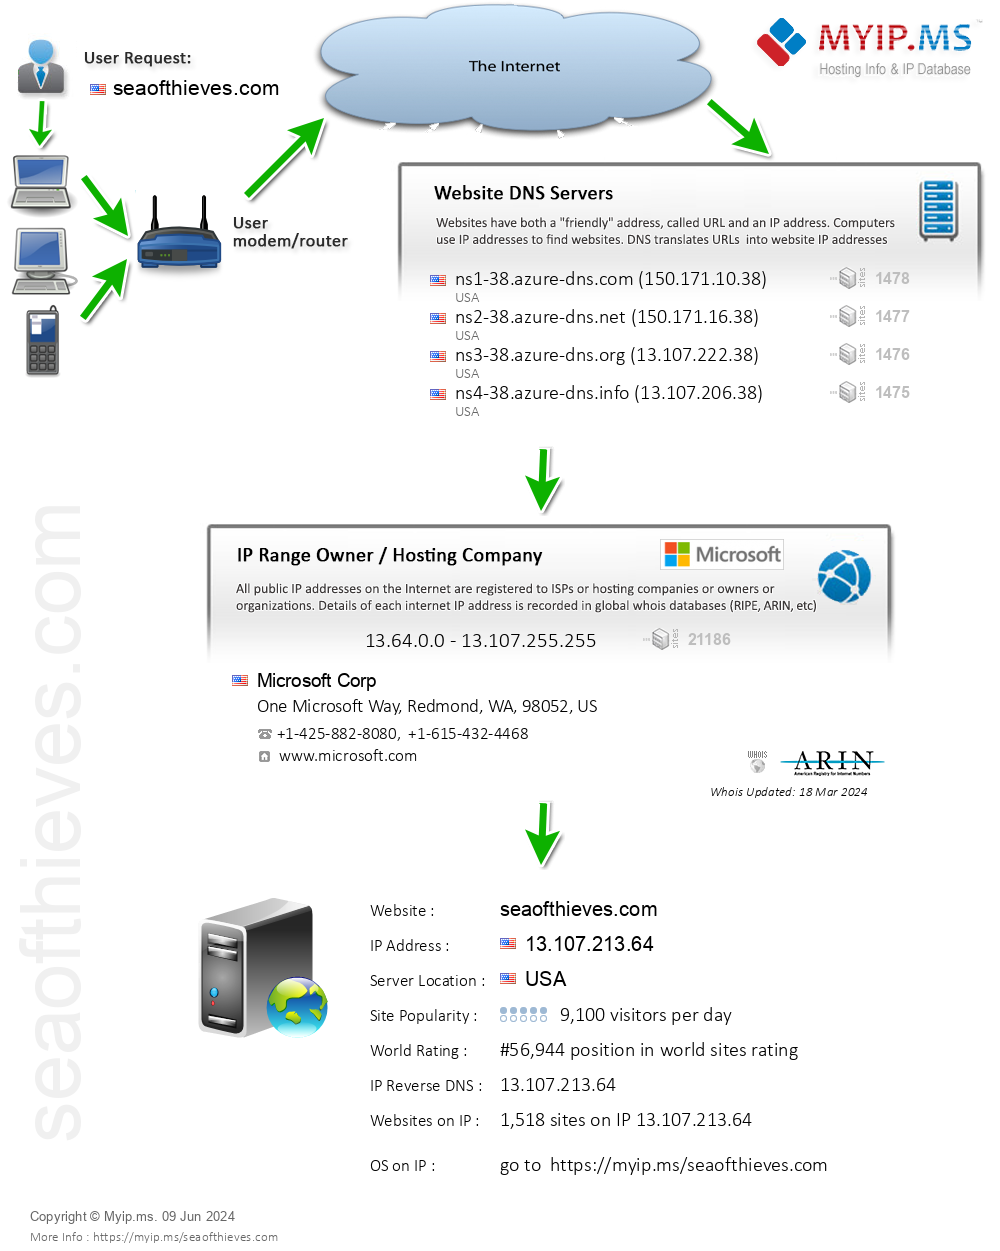 Seaofthieves.com - Website Hosting Visual IP Diagram